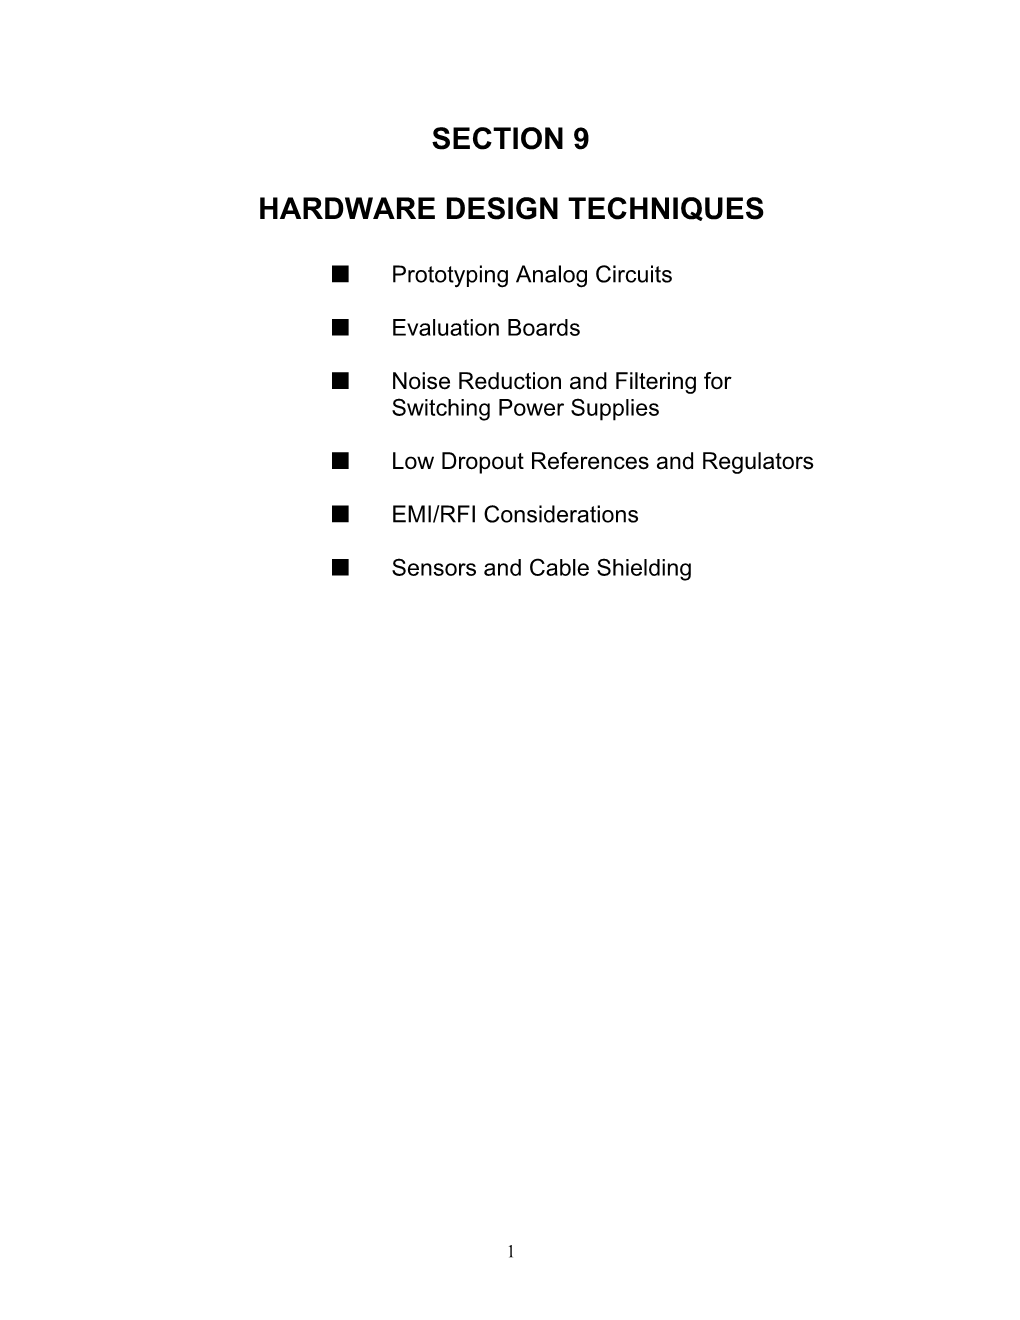 Section 9 Hardware Design Techniques